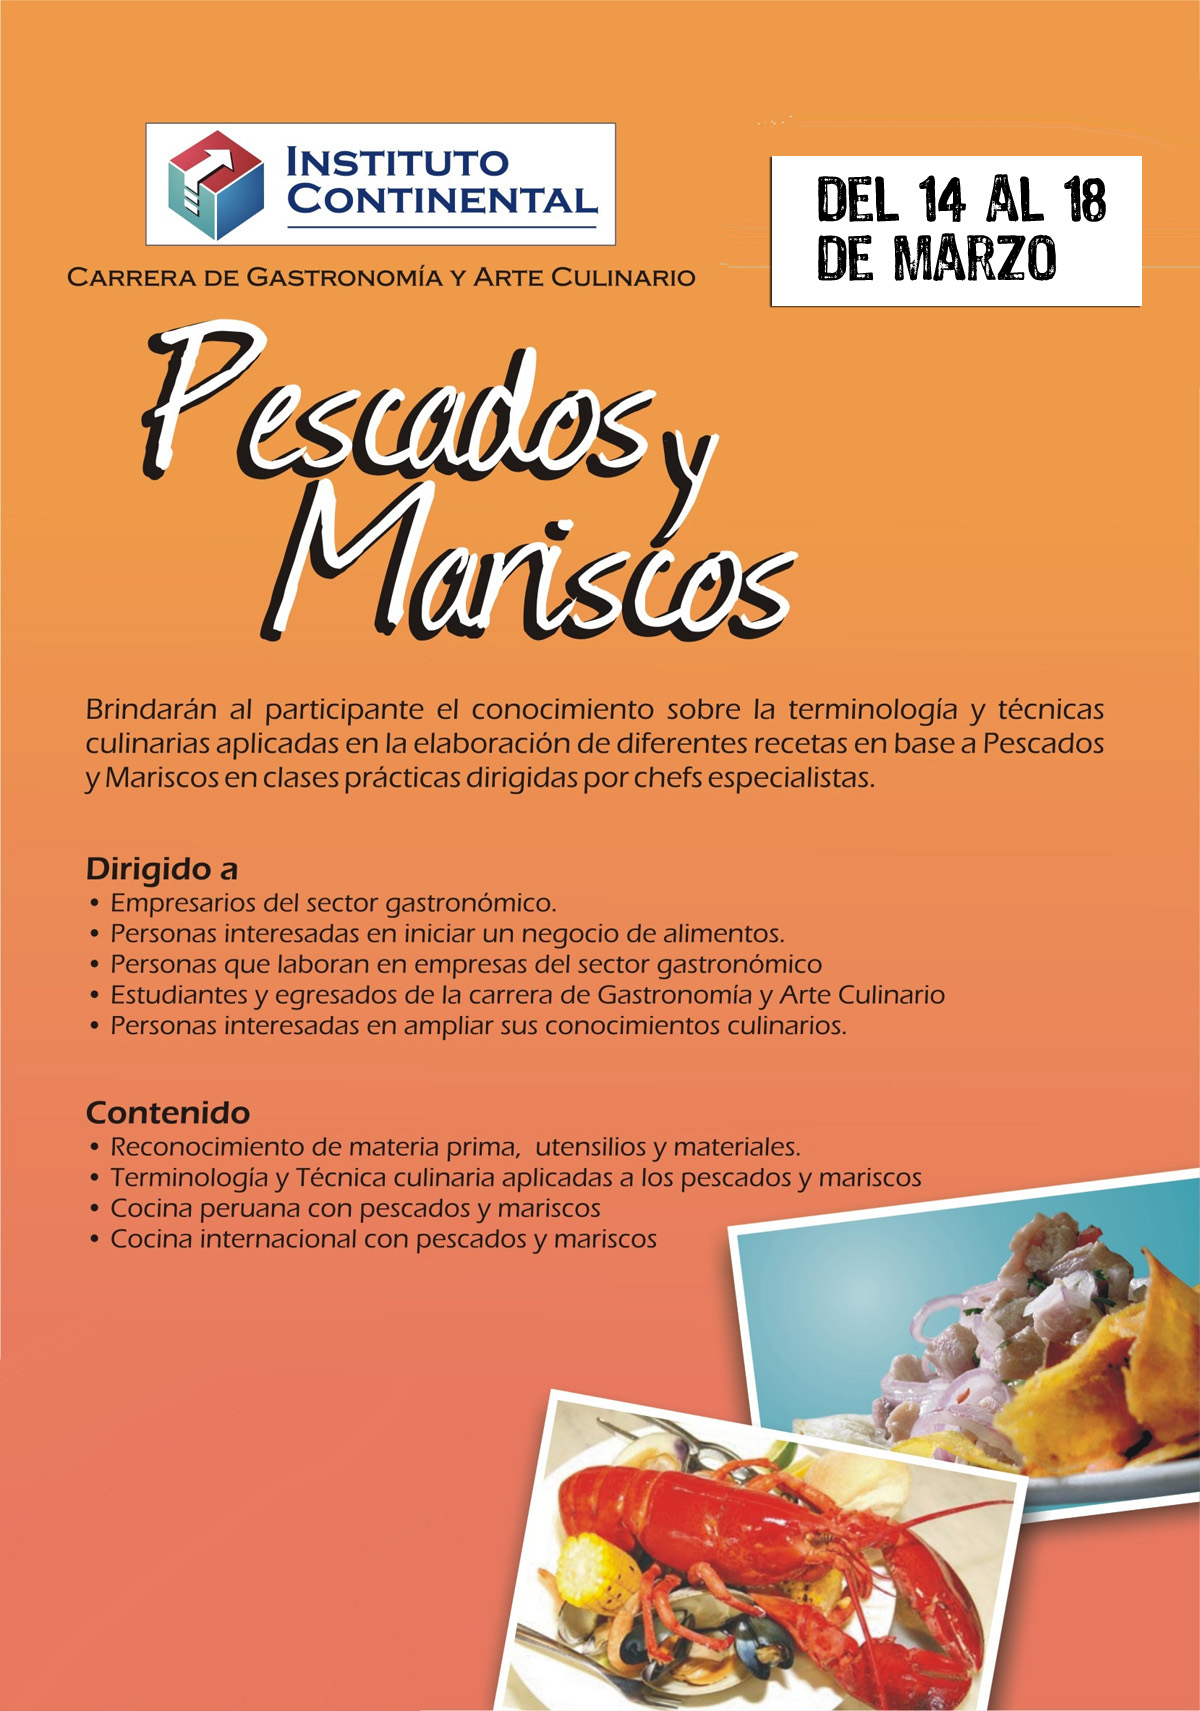 Jornadas de Cocina: Pescados y Mariscos - Instituto Continental